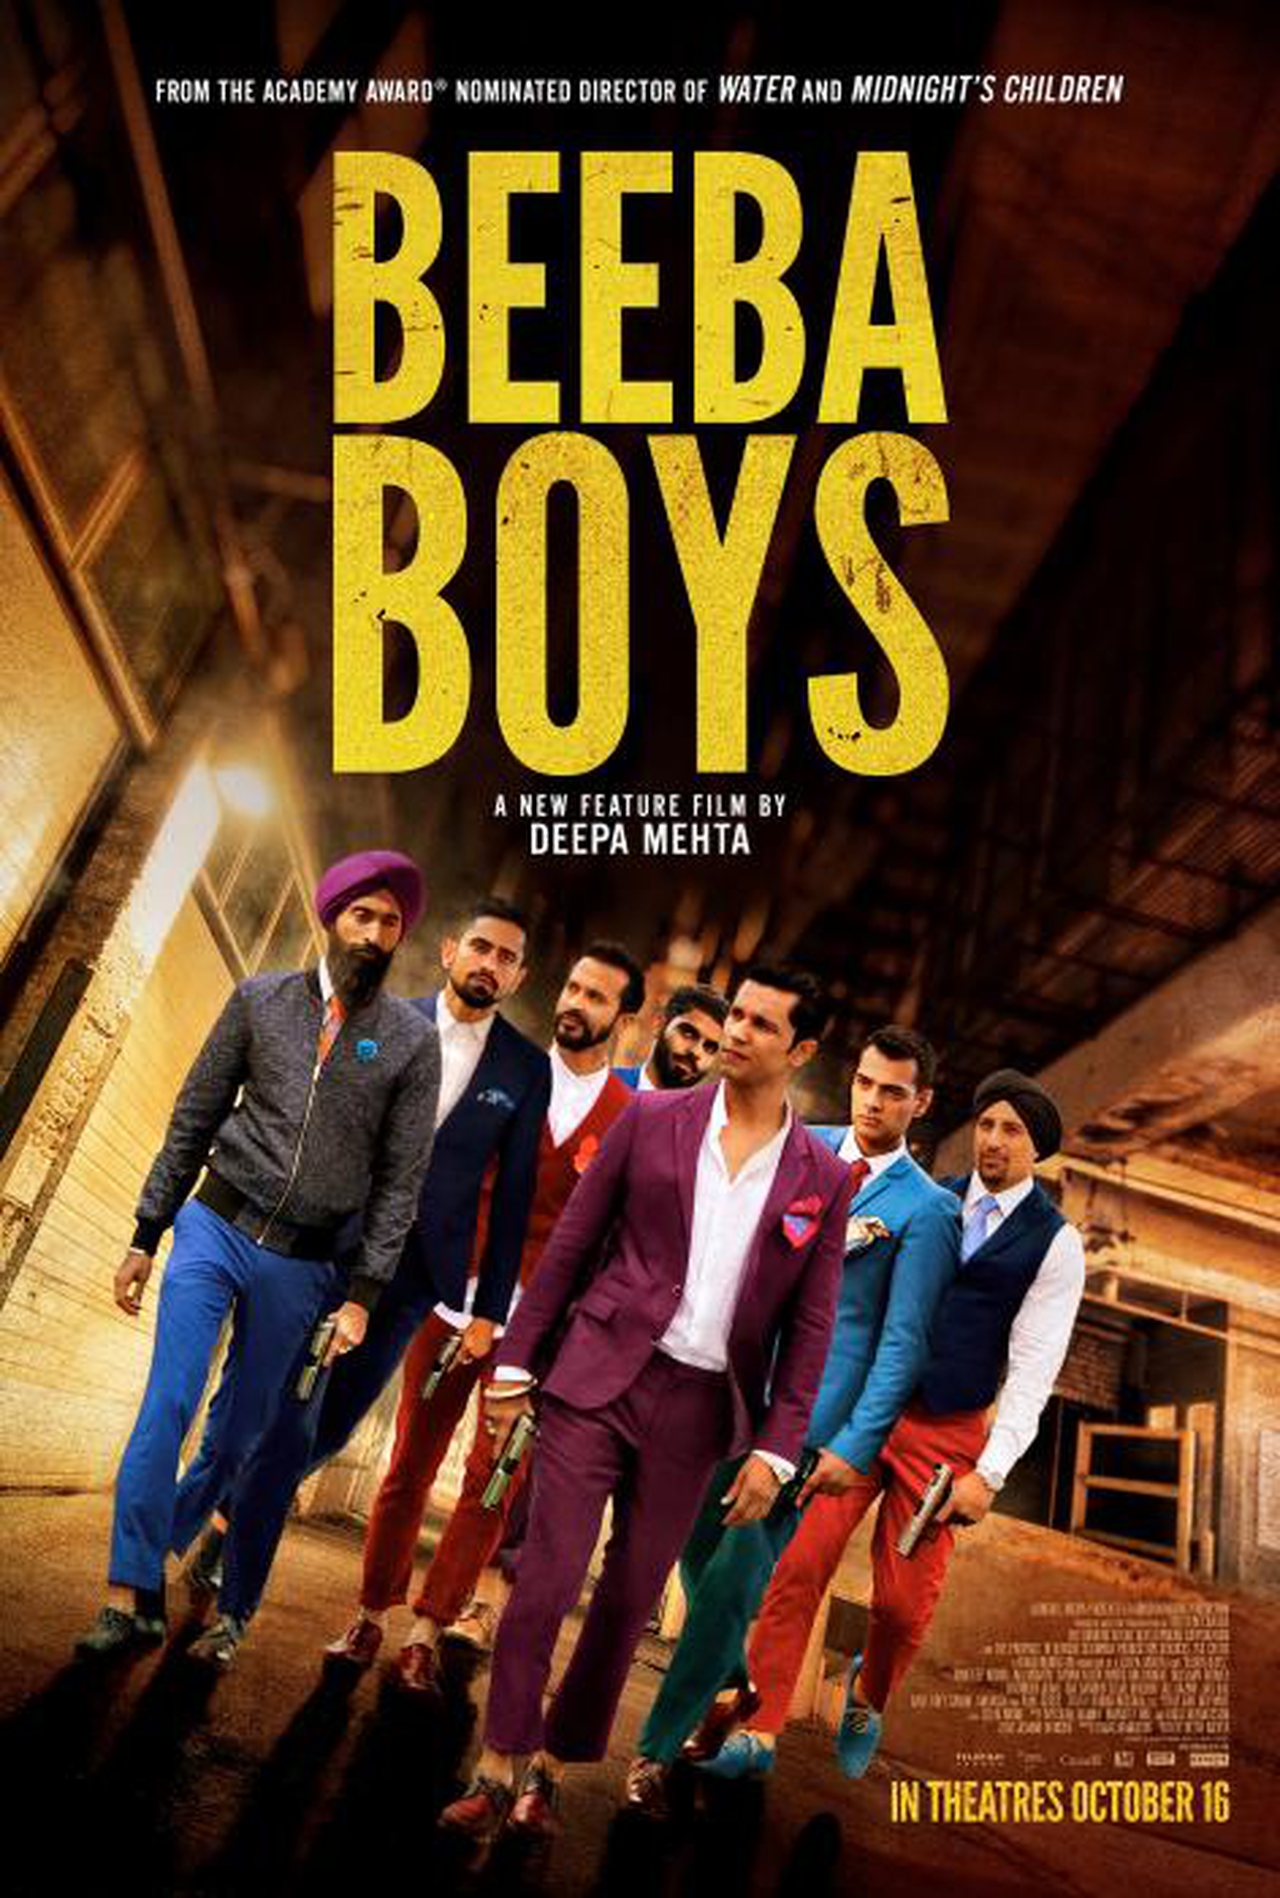  فیلم سینمایی Beeba Boys به کارگردانی Deepa Mehta